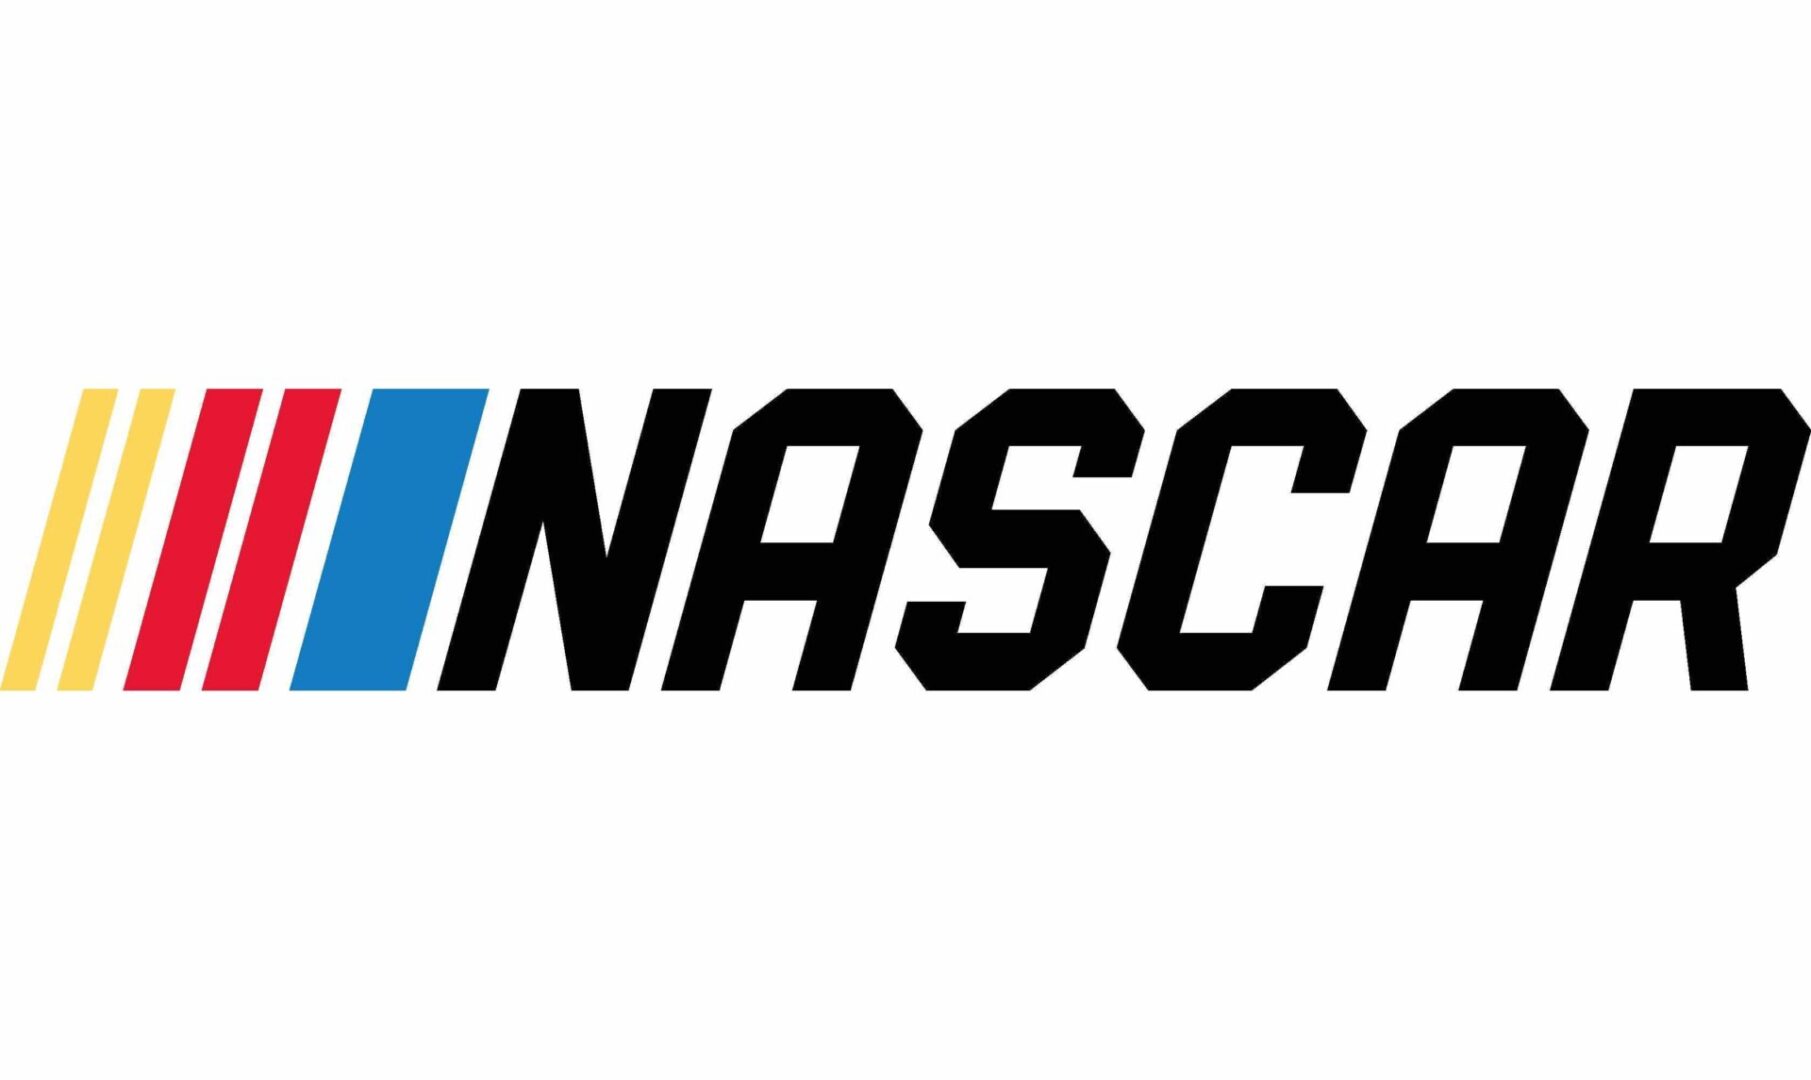 The NASCAR logo